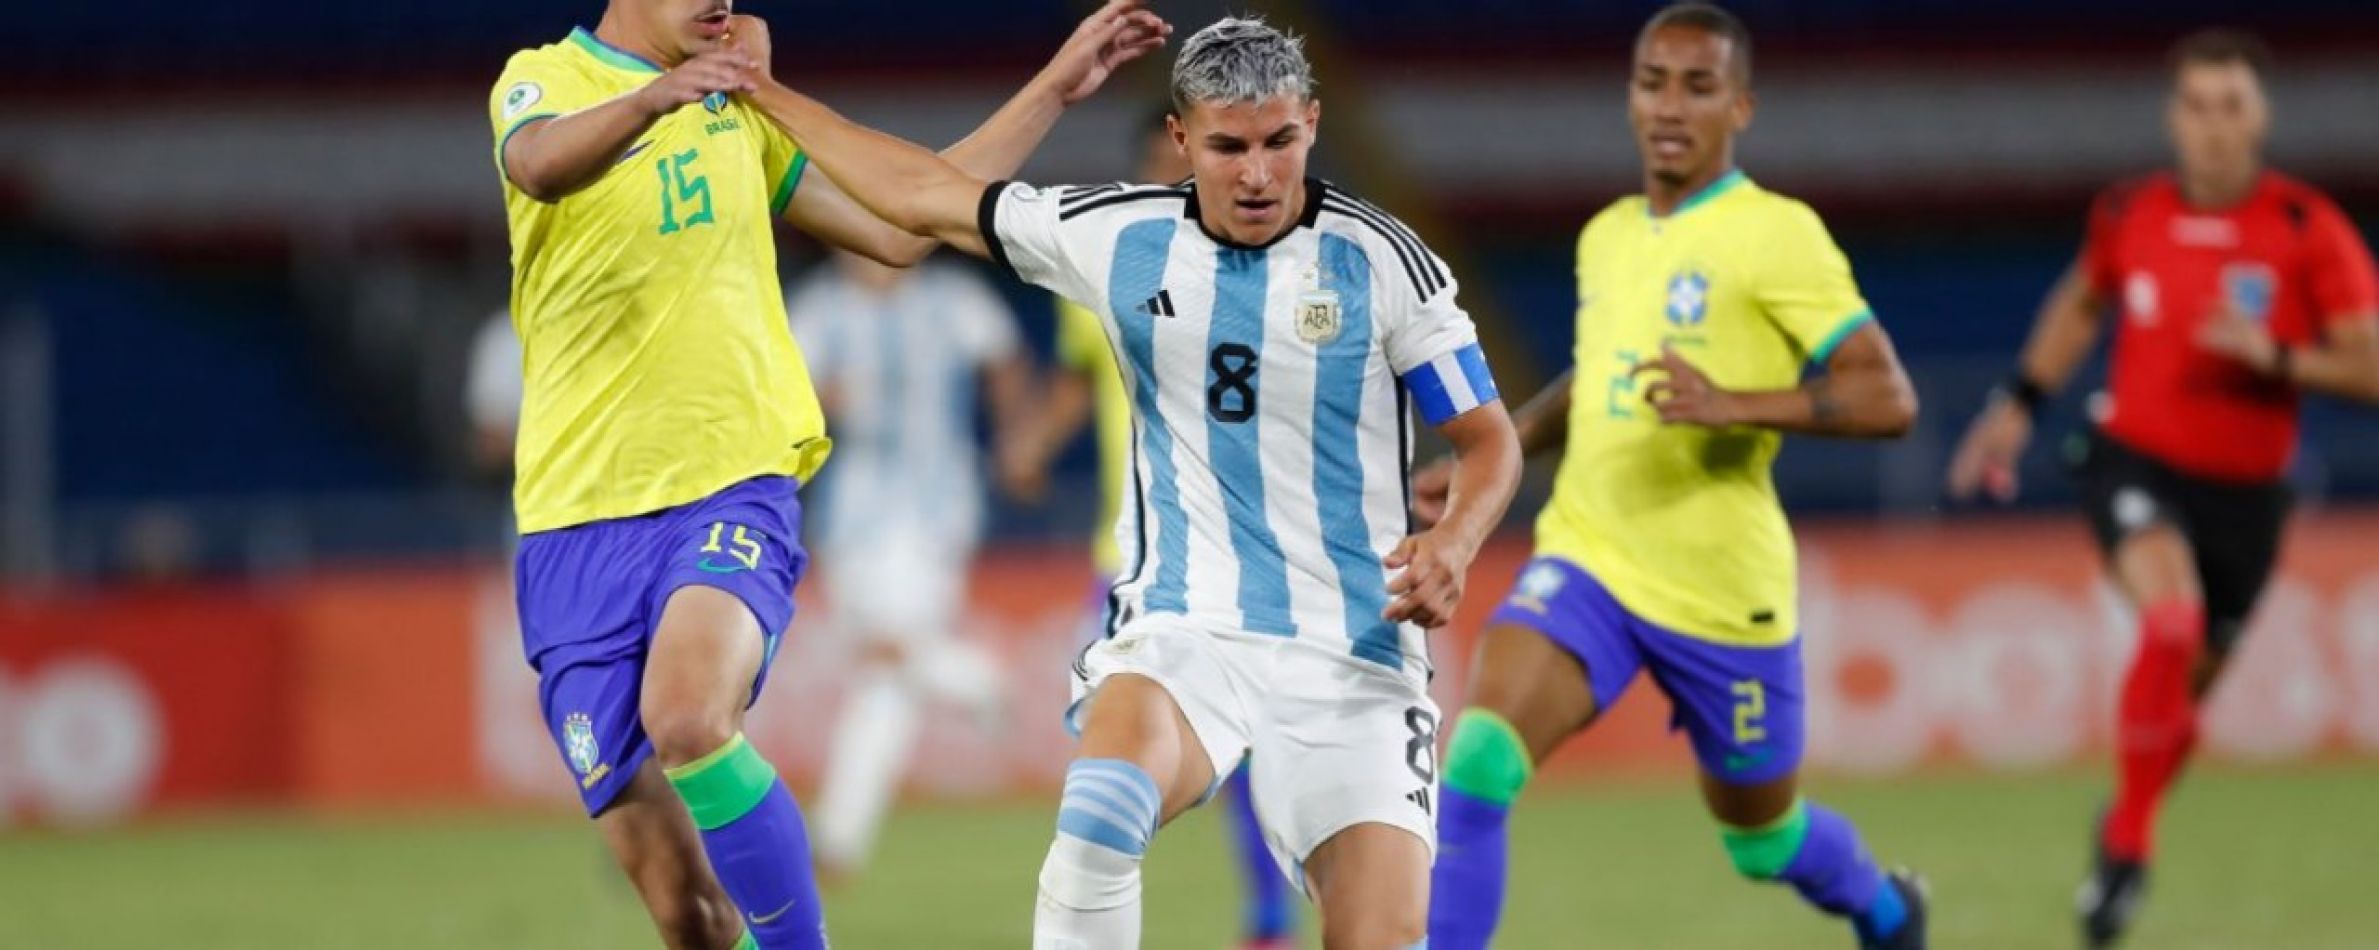 La Selección Argentina Sub 20 perdió 3 a 1 ante Brasil en el Sudamericano